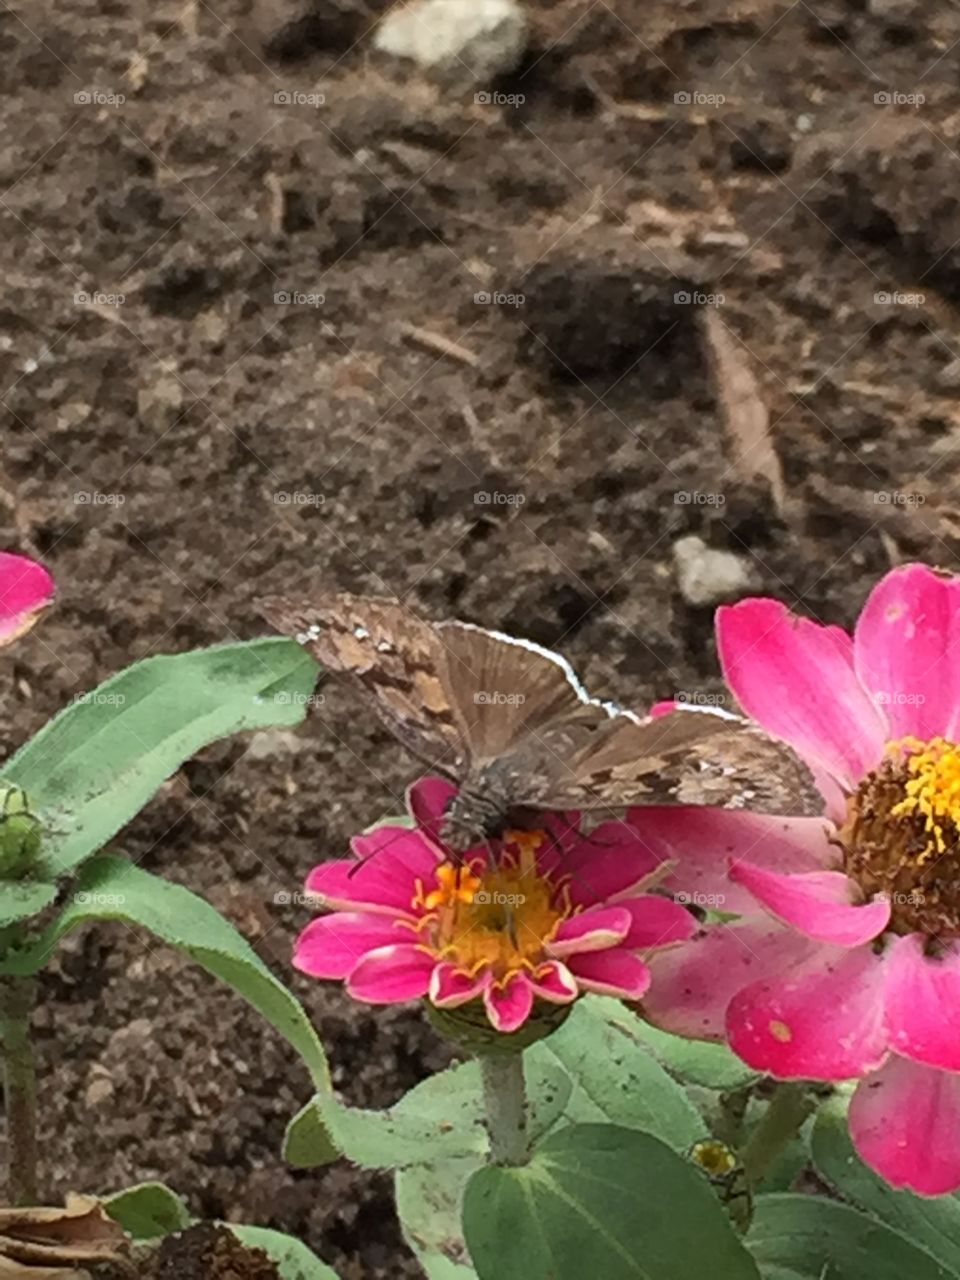 Butterfly on flowers 